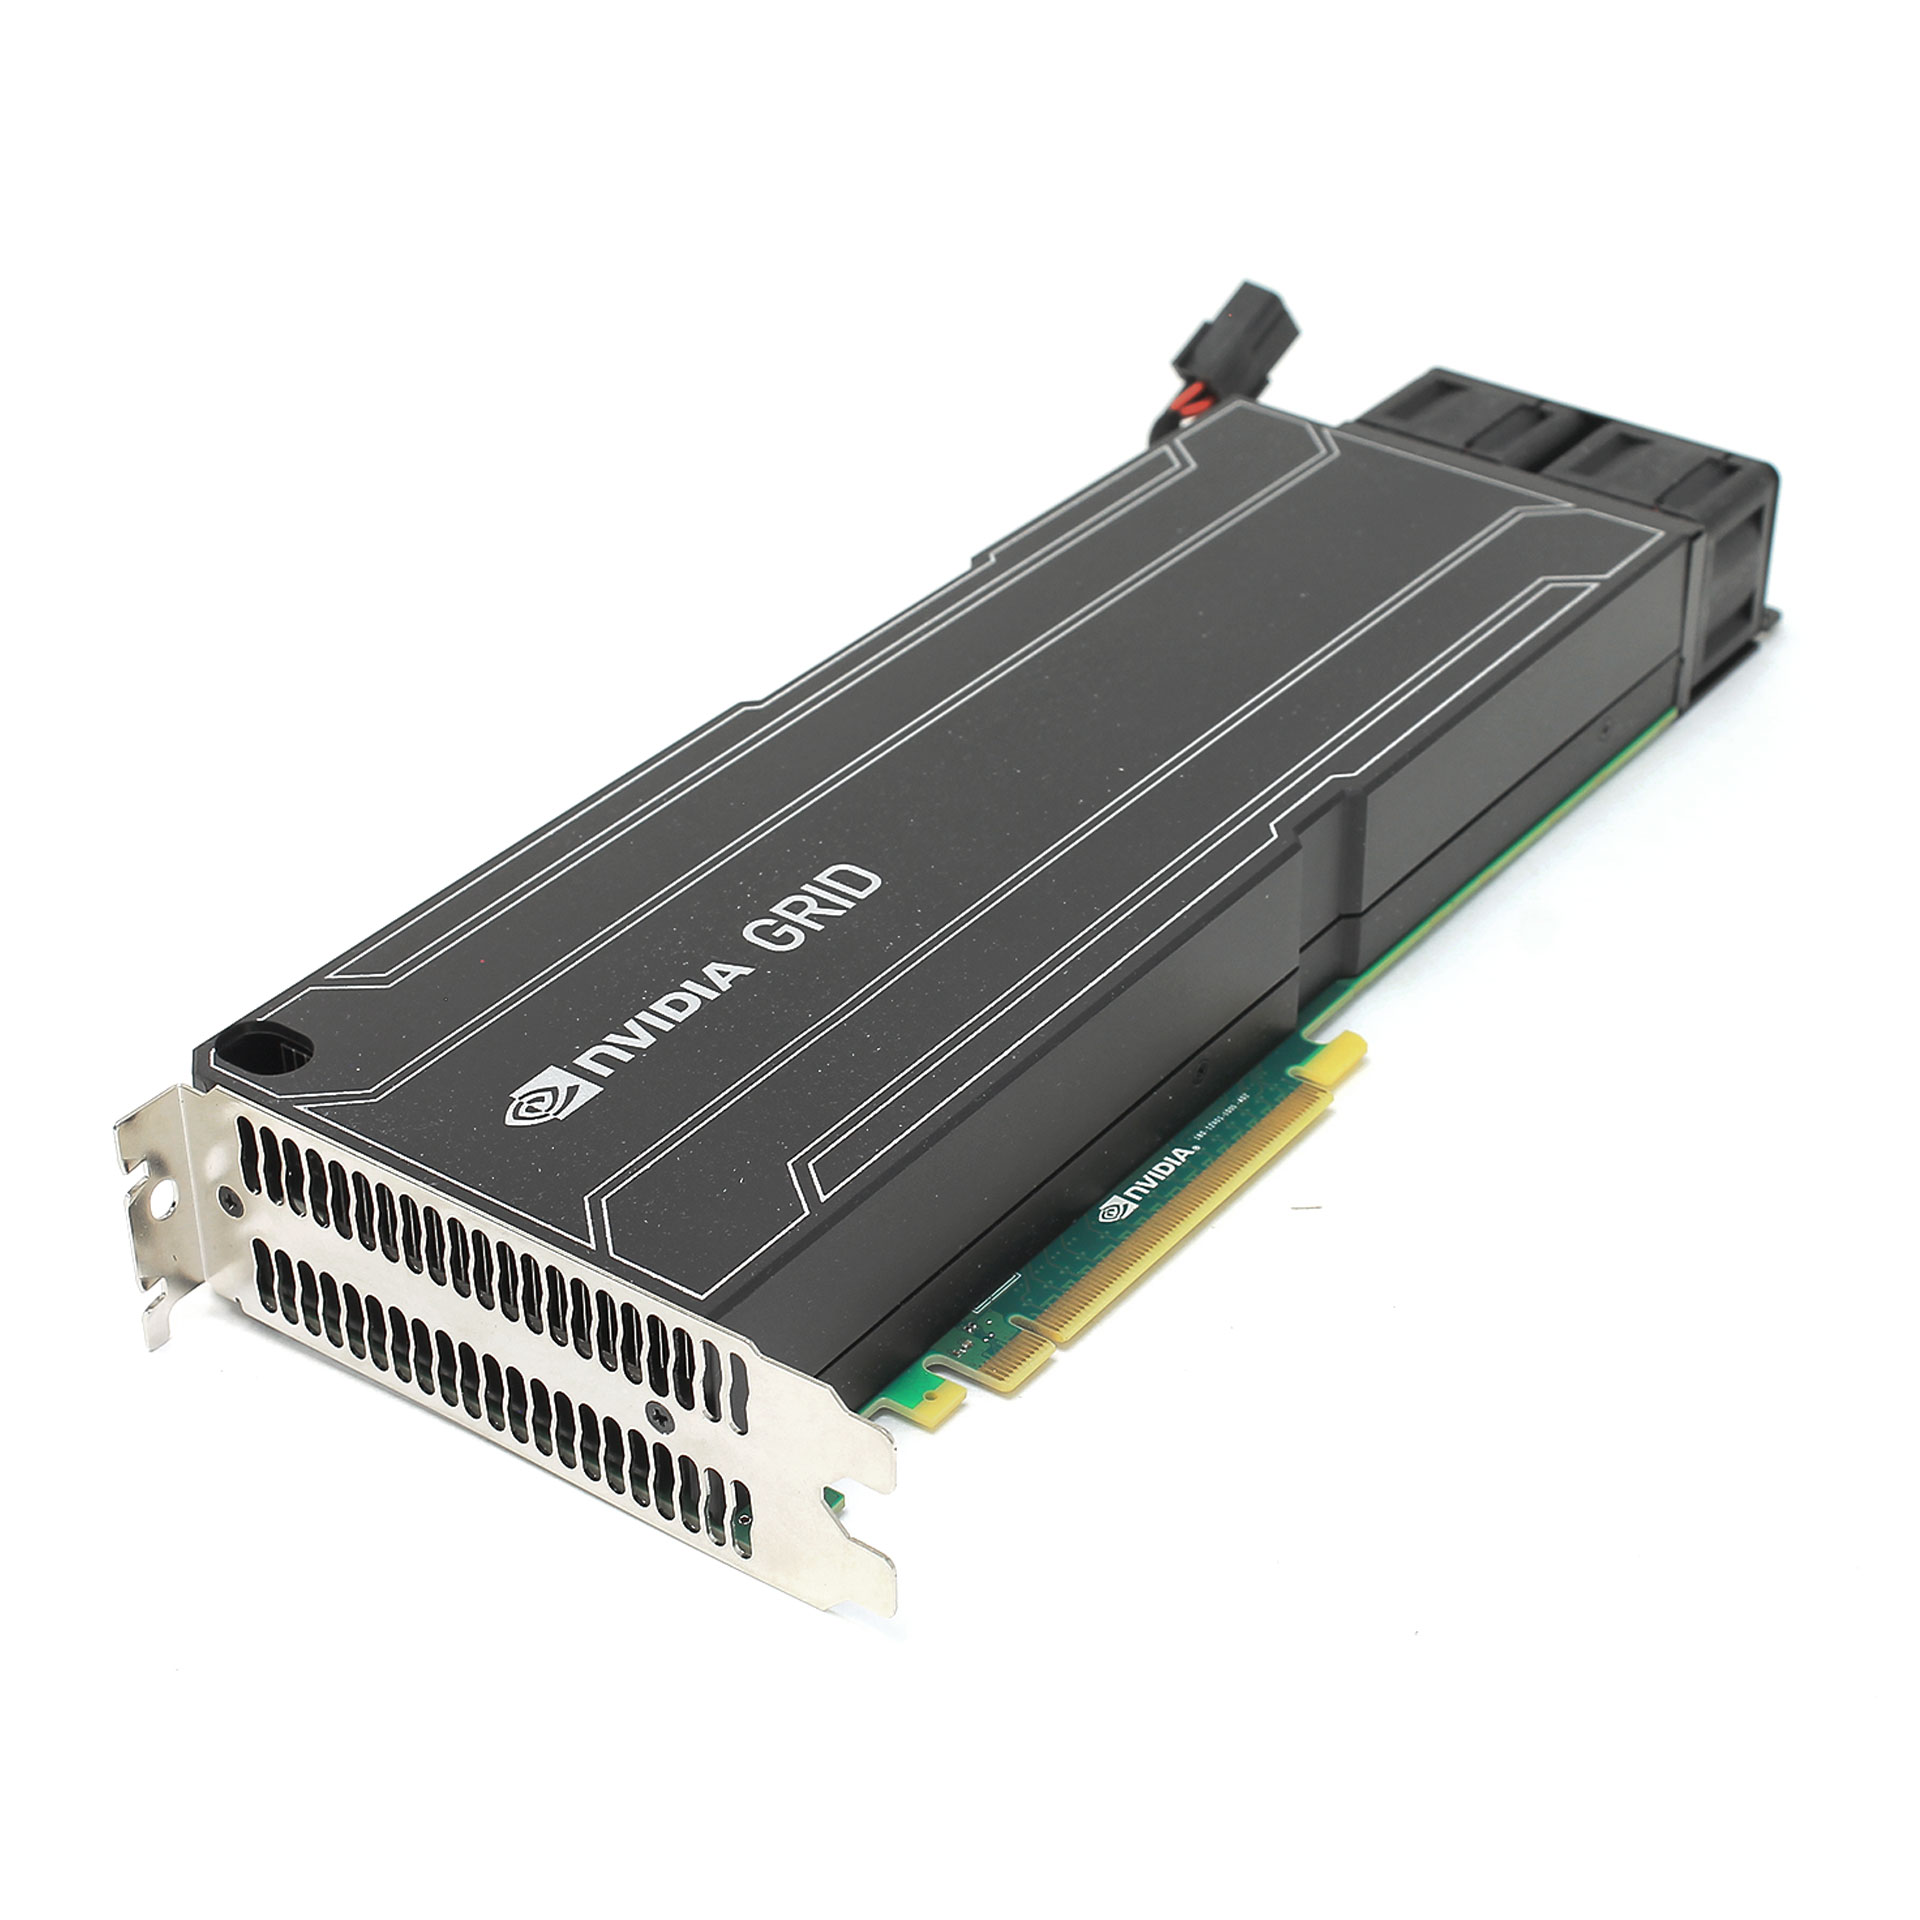 IBM Nvidia GRID K1 GPU PCIe x16 16GB 90Y2432 900-52401-0430-000